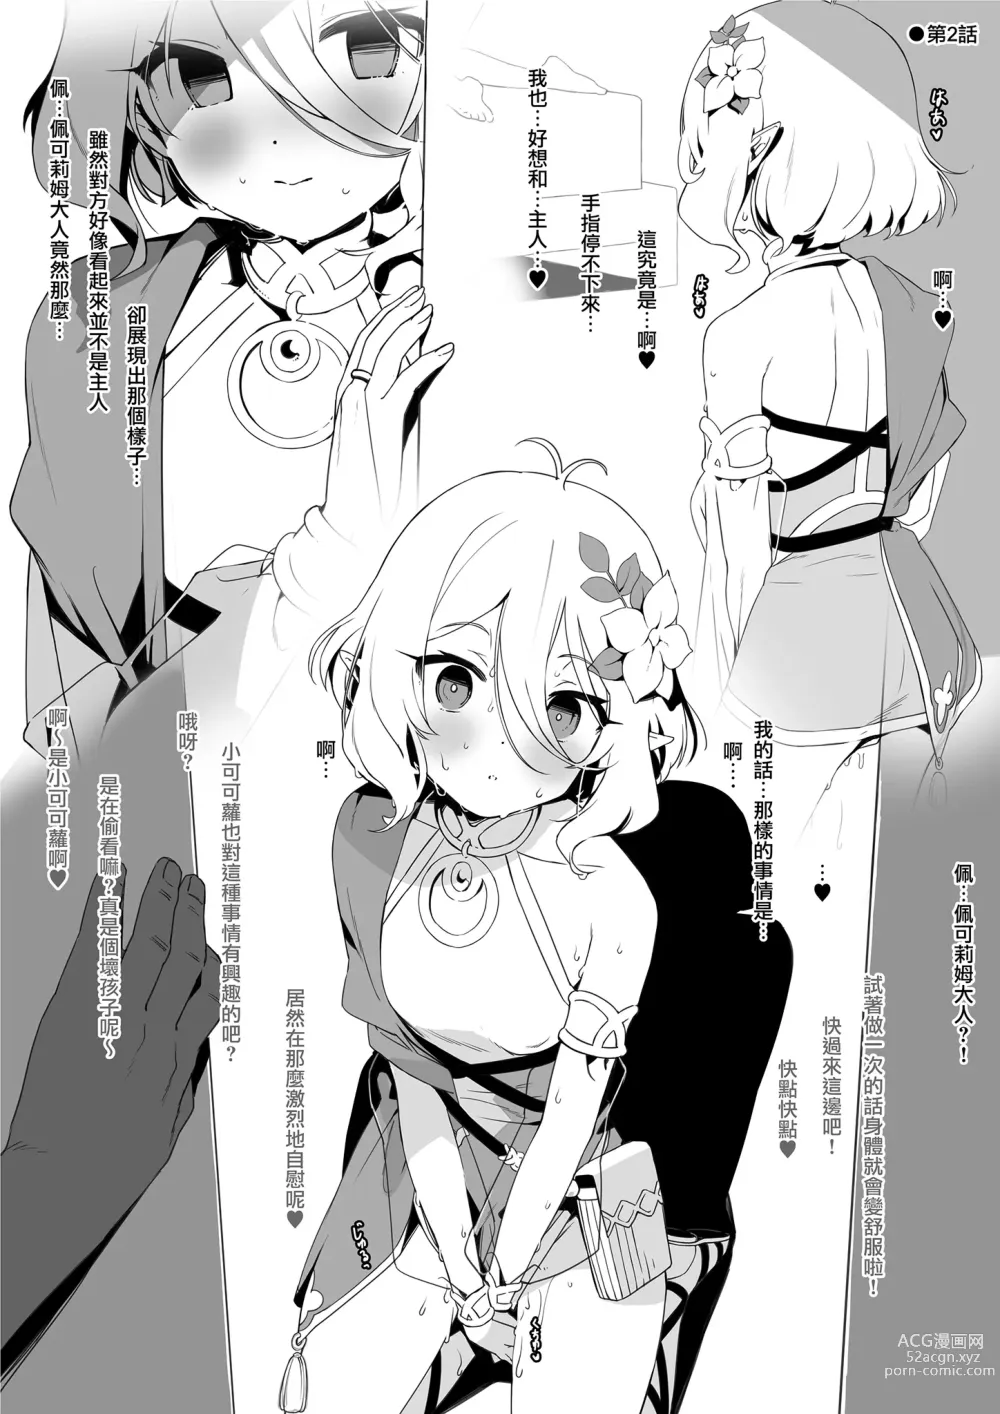 Page 5 of doujinshi Kongetsu no Ero Manga